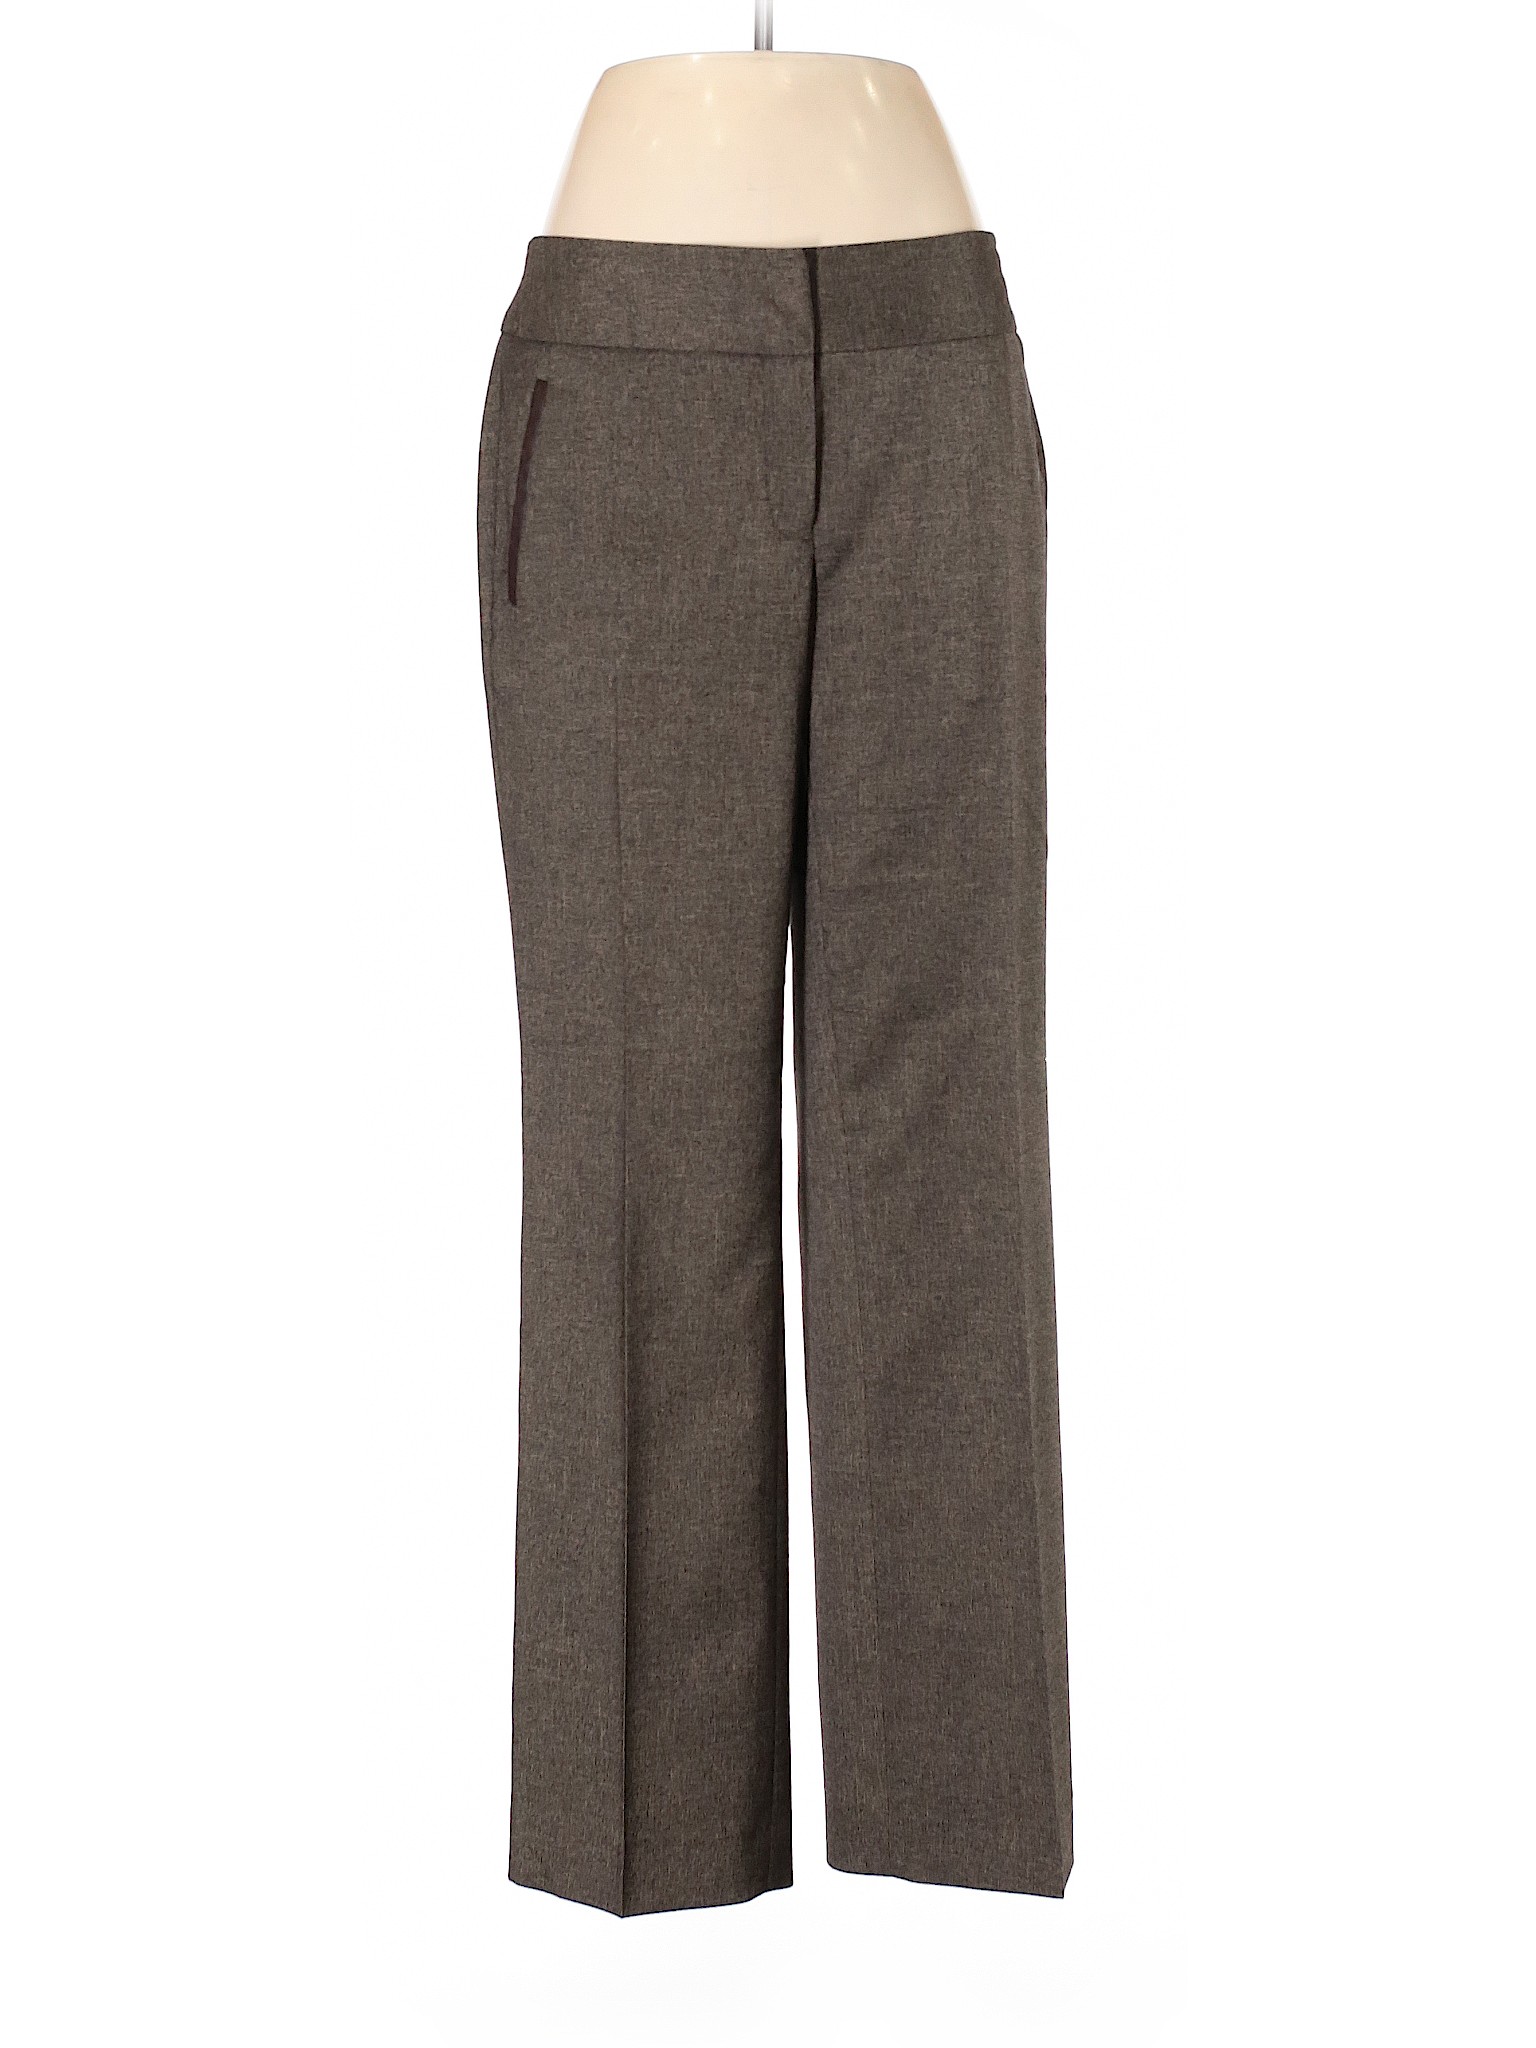 Rafaella Women Brown Dress Pants 6 | eBay